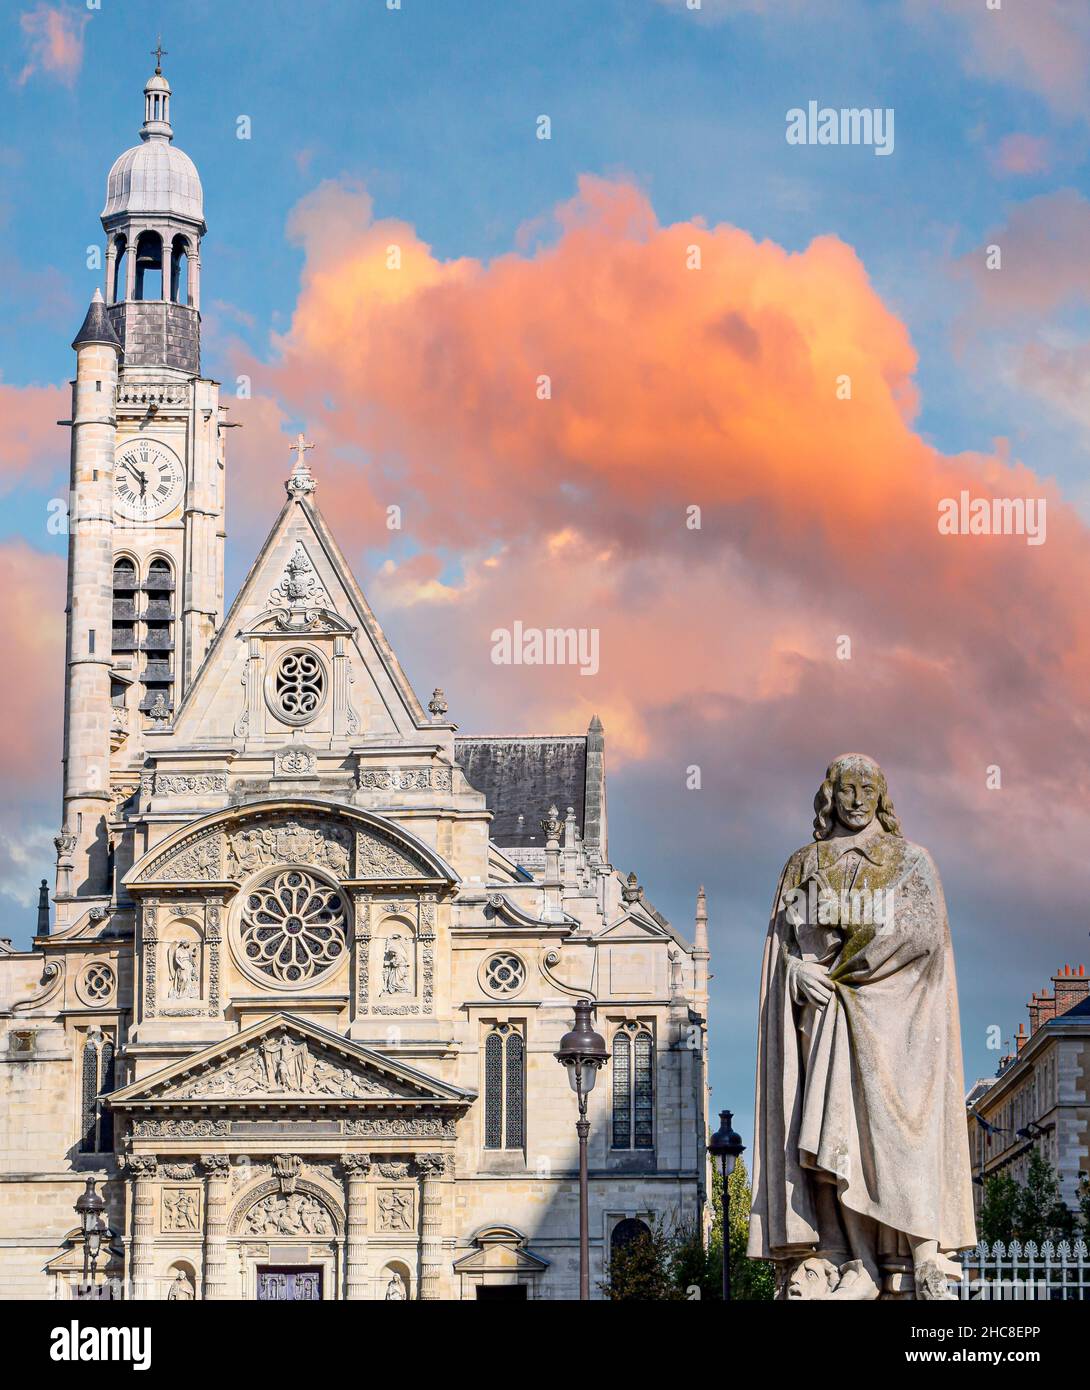 Estatua a Corneille e iglesia de Saint Etienne du Mont en Paris, Francia.JPG Stock Photo